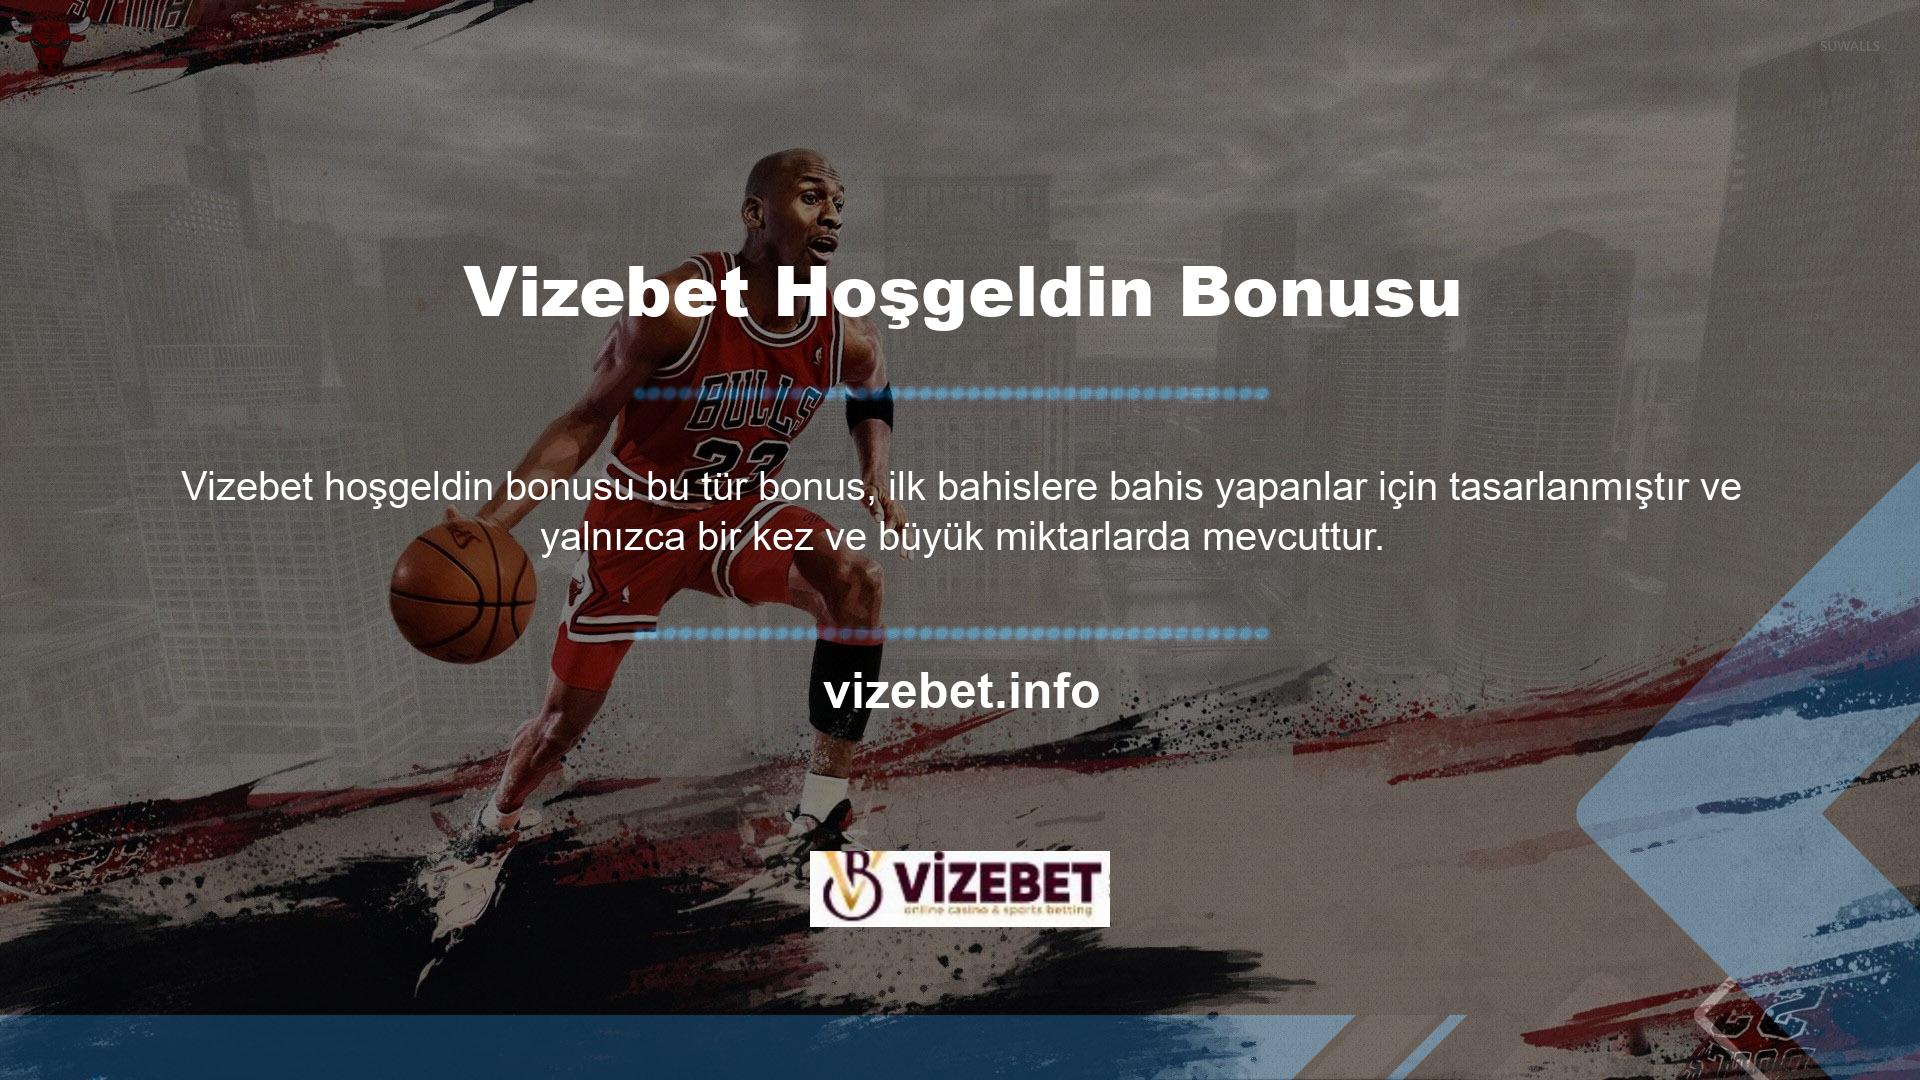 Vizebet hoş geldin bonusu bahis sitesi, Türkiye'de benzersizdir